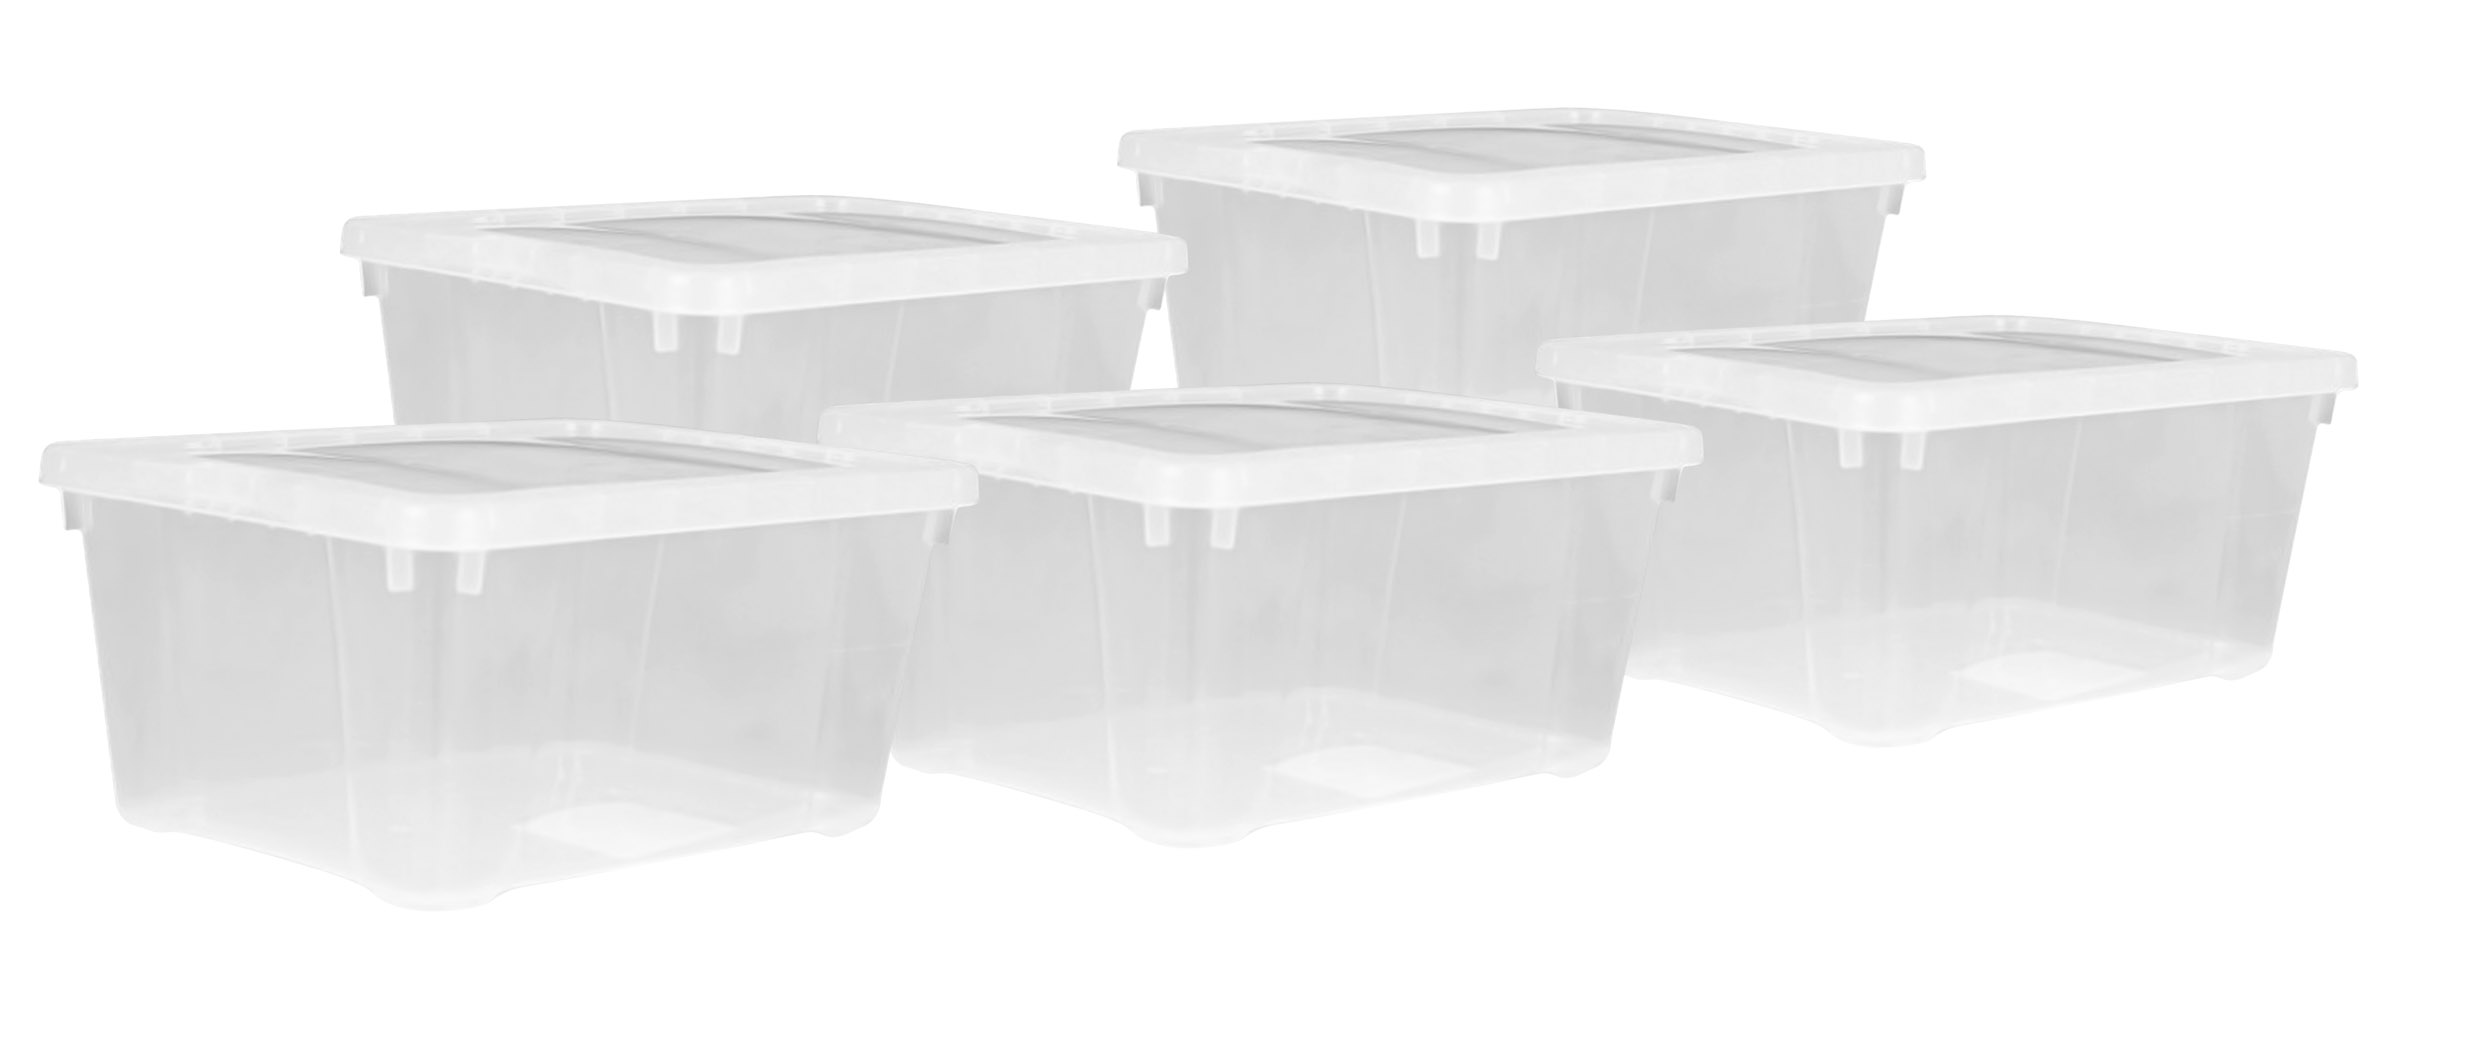 XXL Kunststoff Aufbewahrungsbox transparent - 24 Liter - Universal